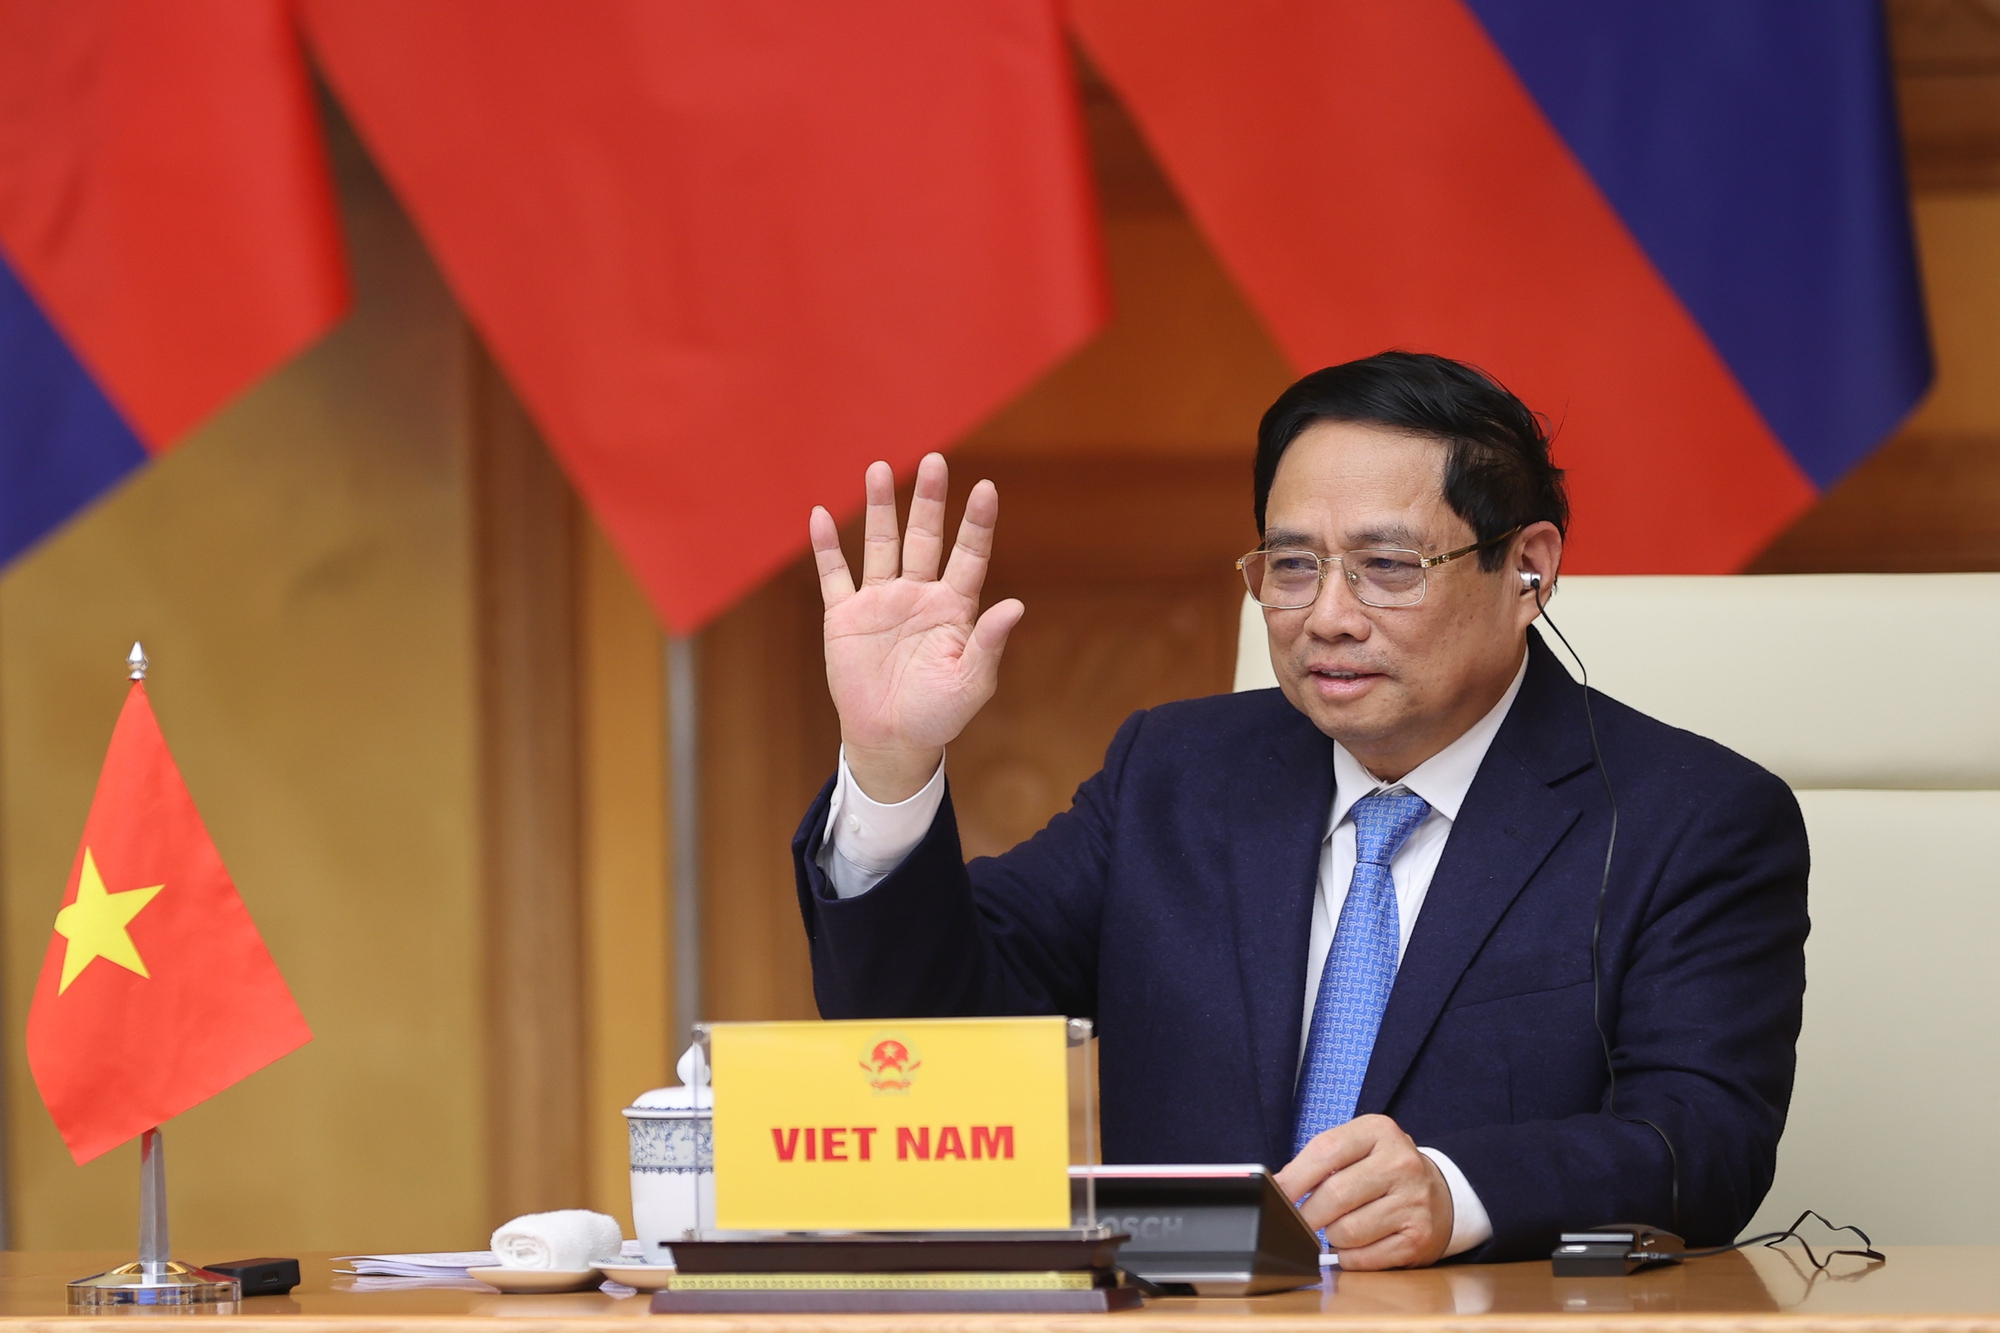 Thủ tướng Phạm Minh Chính đề xuất 3 ưu tiên hợp tác để sáu nước Mekong-Lan Thương vươn lên mạnh mẽ